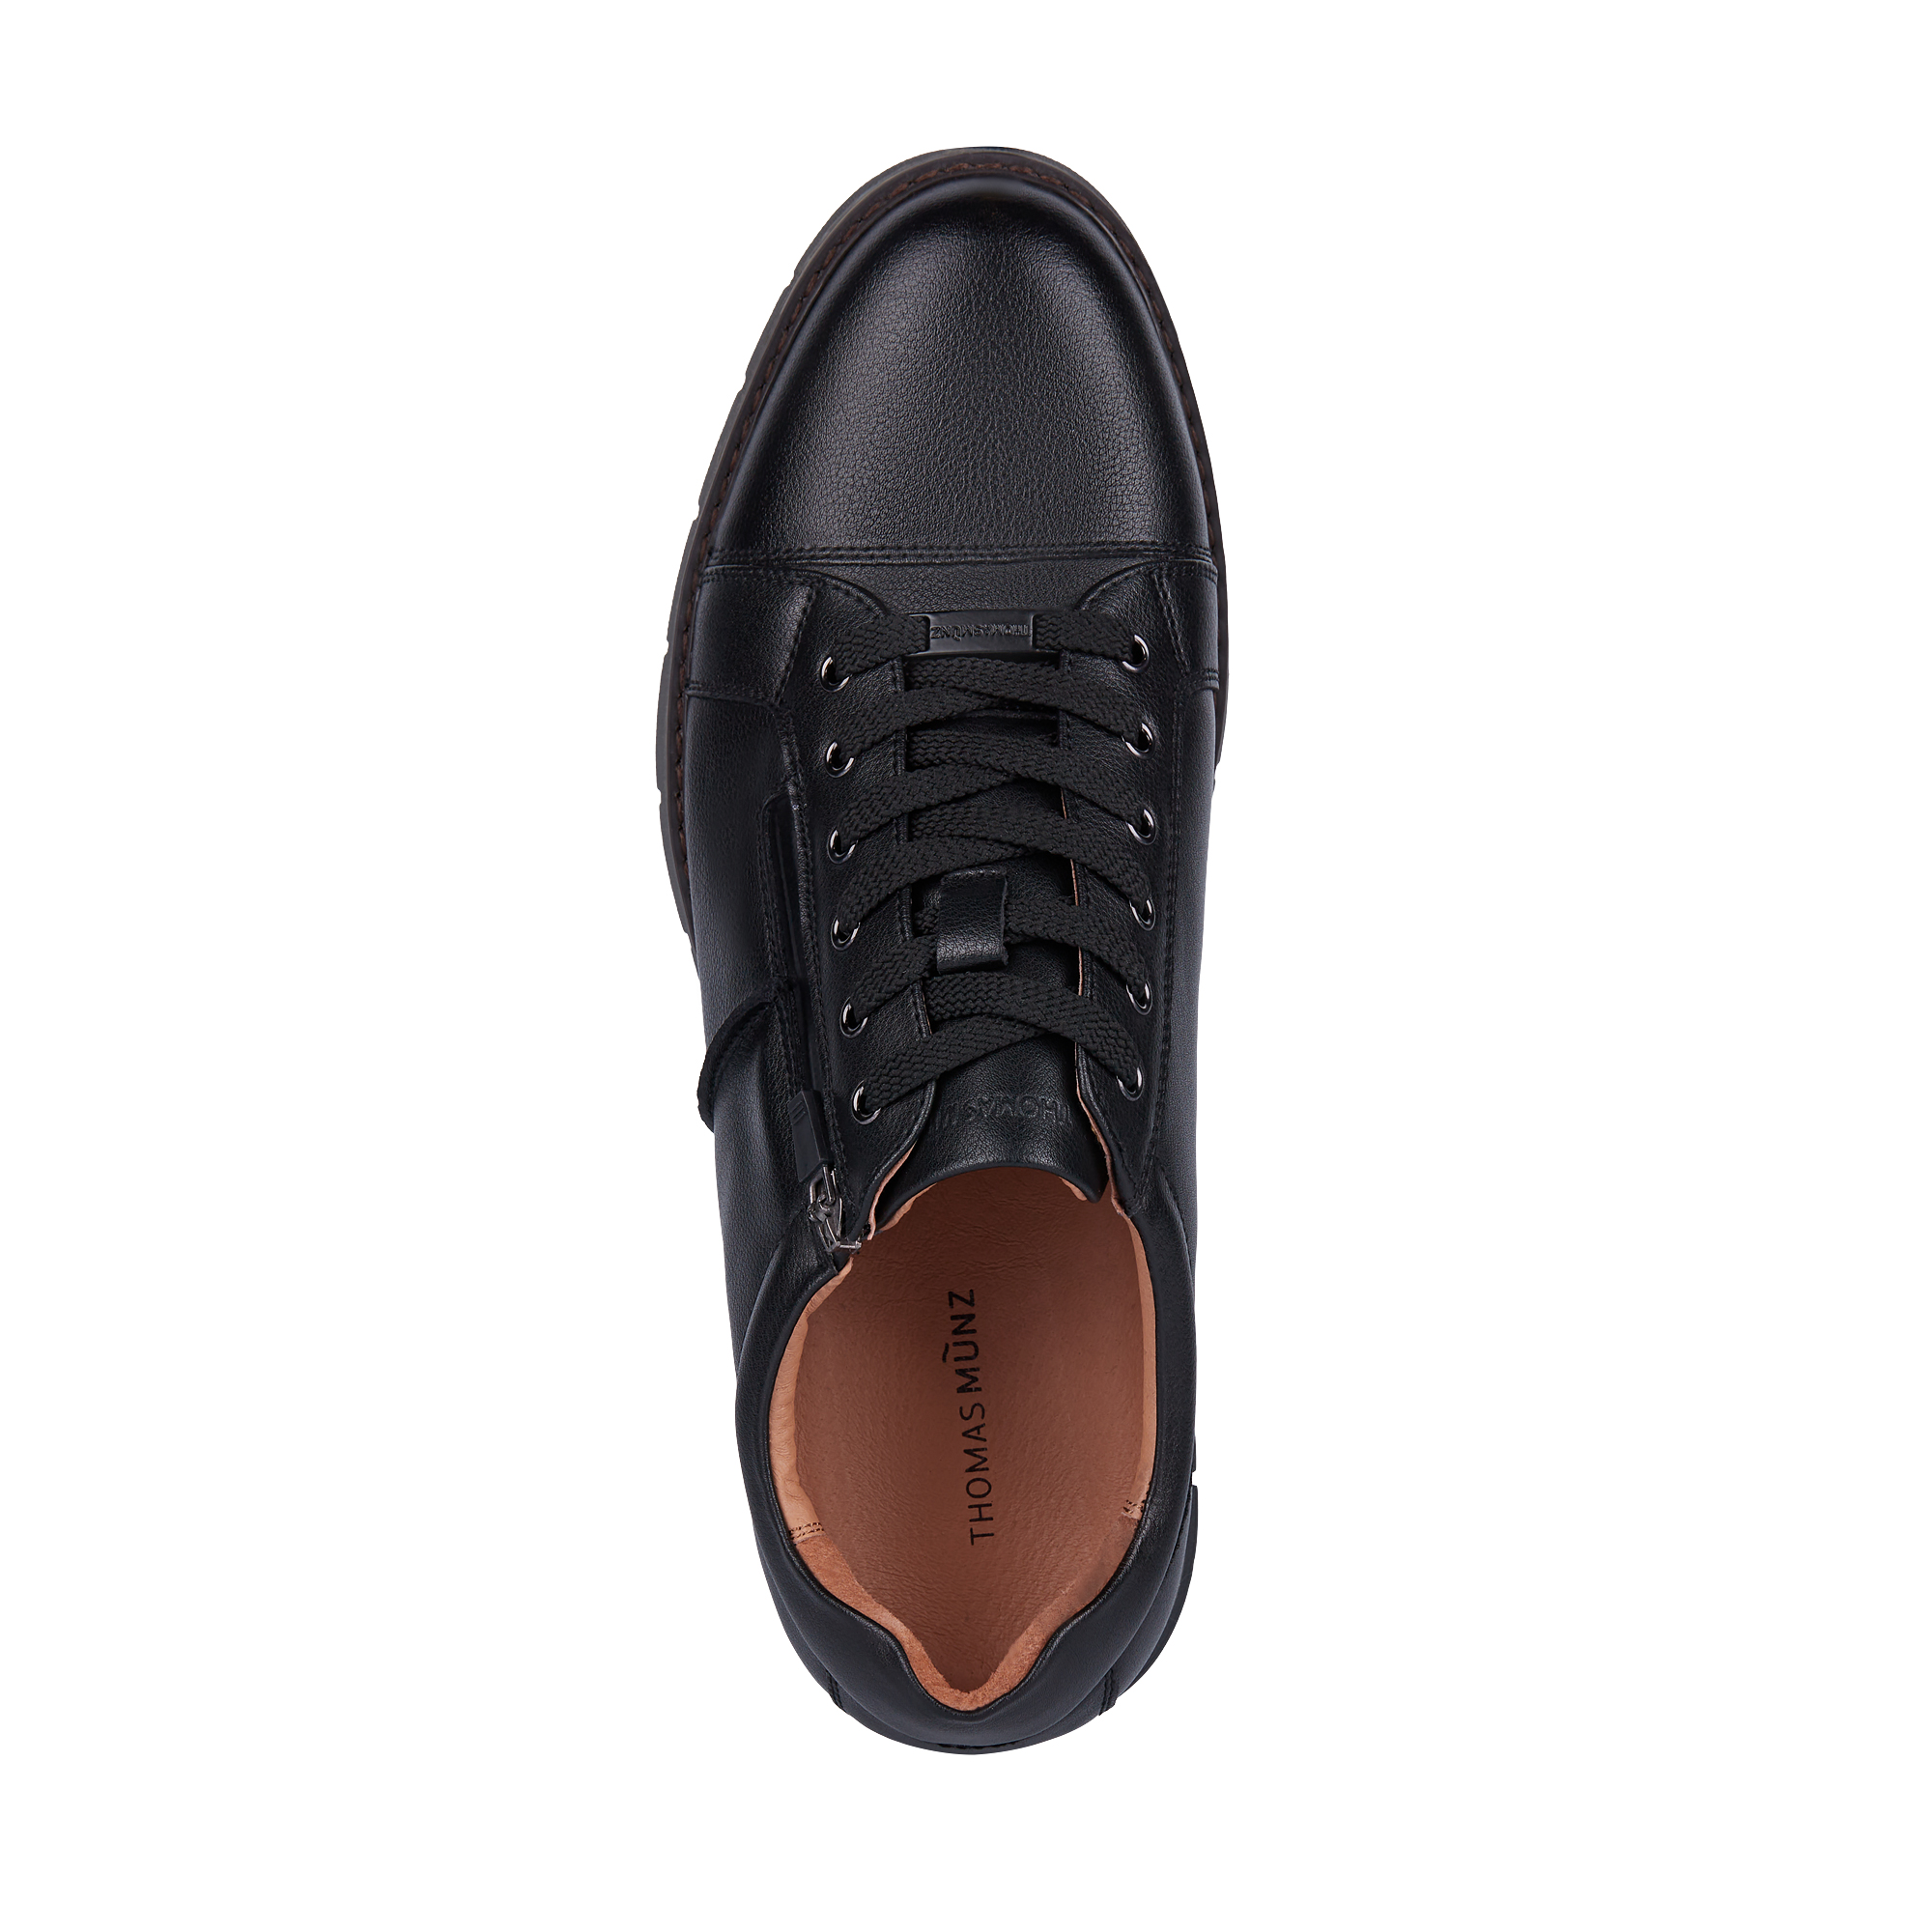 Туфли/полуботинки Thomas Munz 058-909A-1602, цвет черный, размер 40 - фото 5